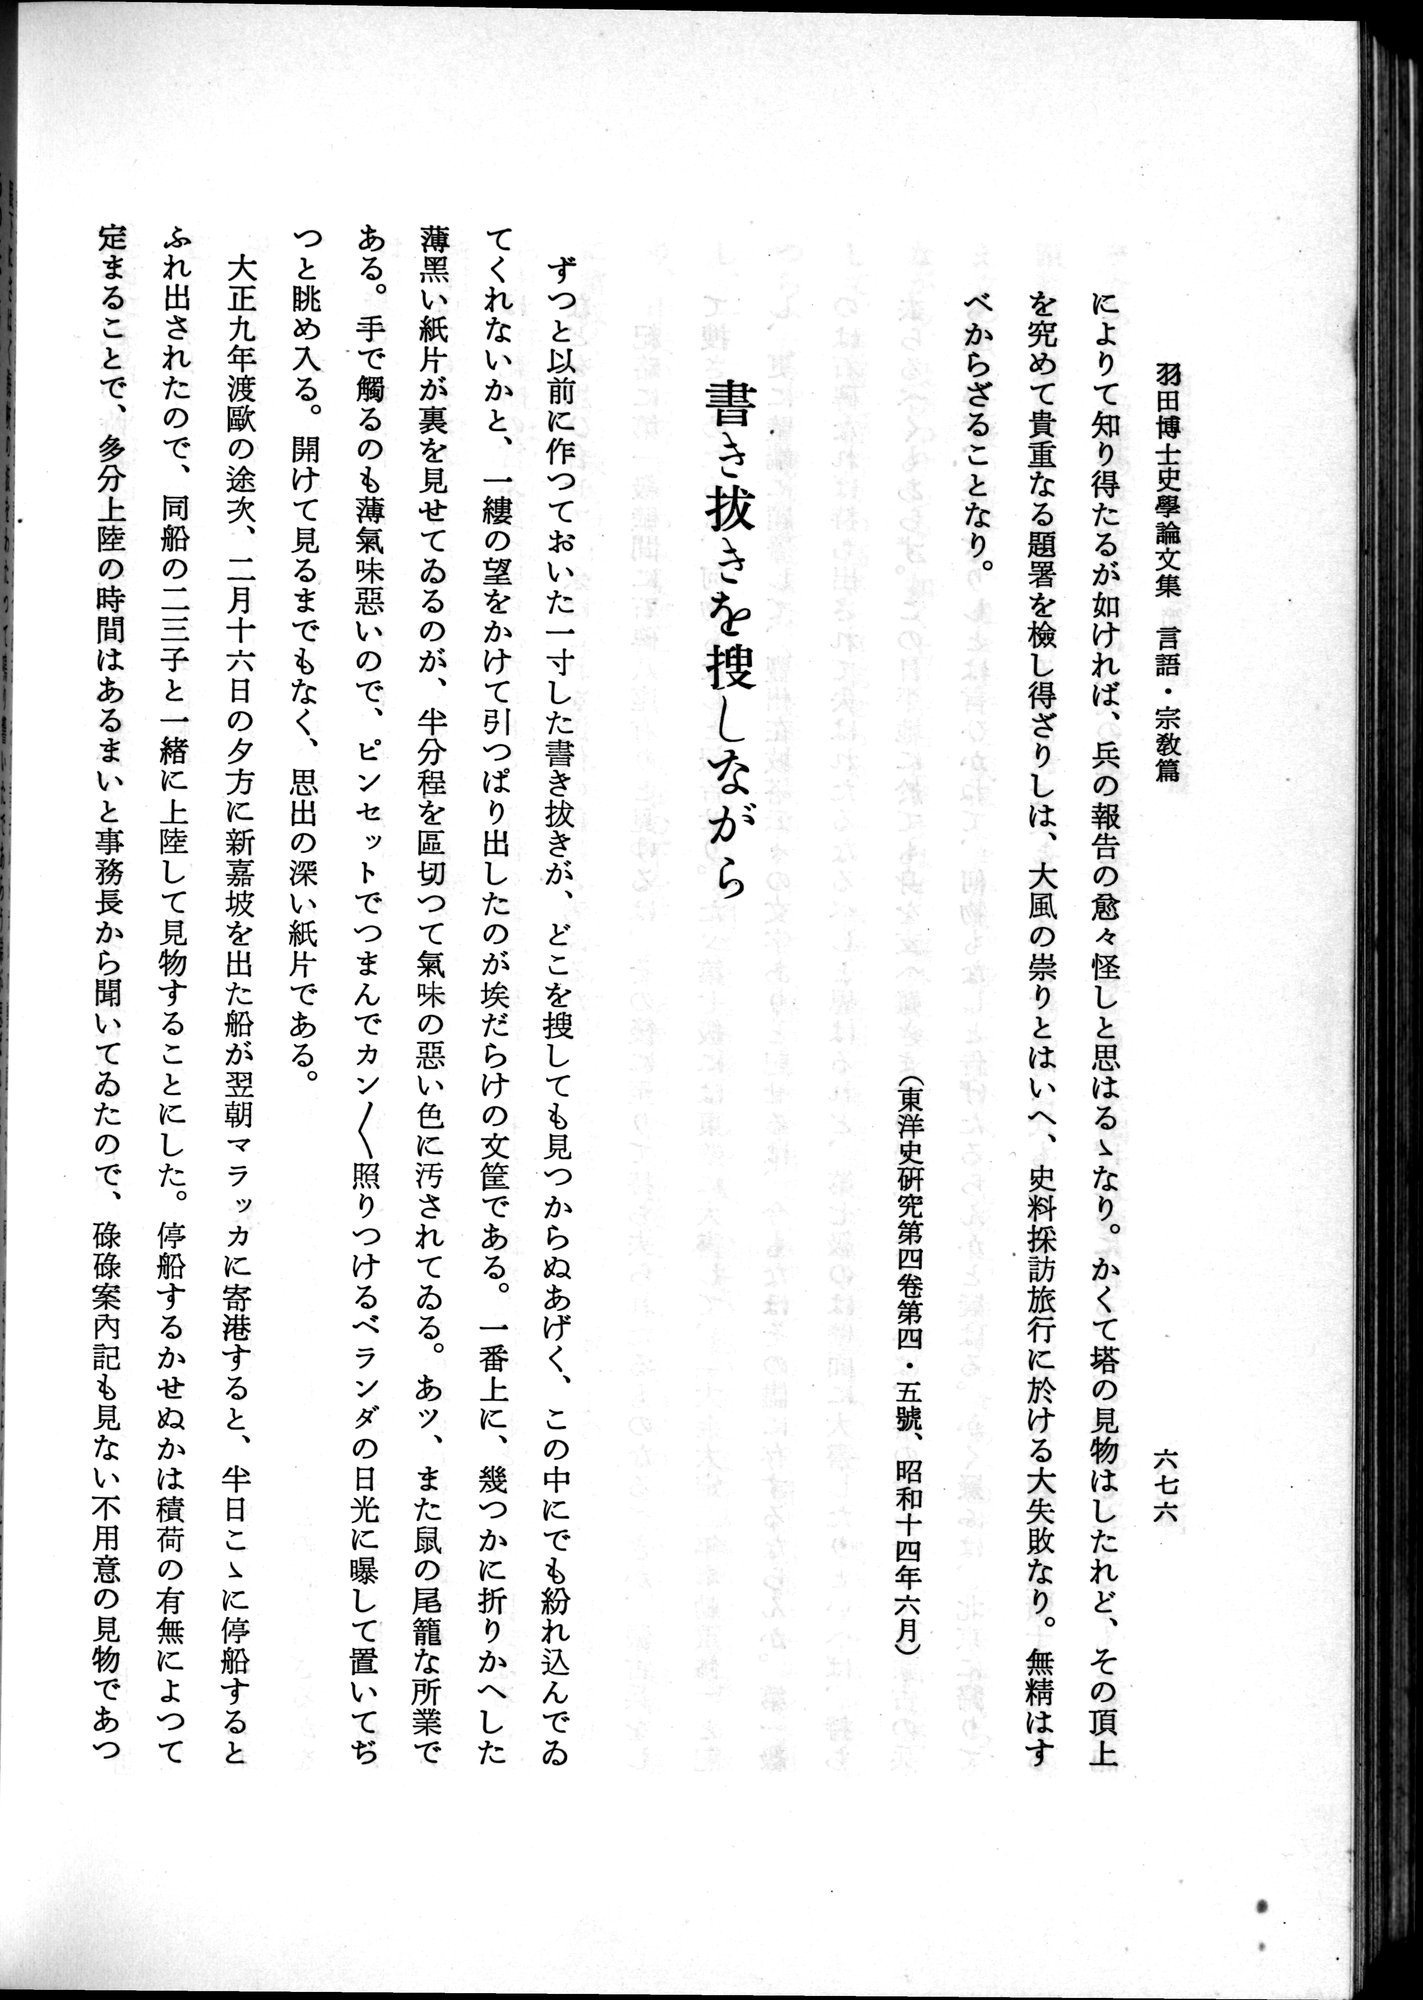 羽田博士史学論文集 : vol.2 / Page 740 (Grayscale High Resolution Image)